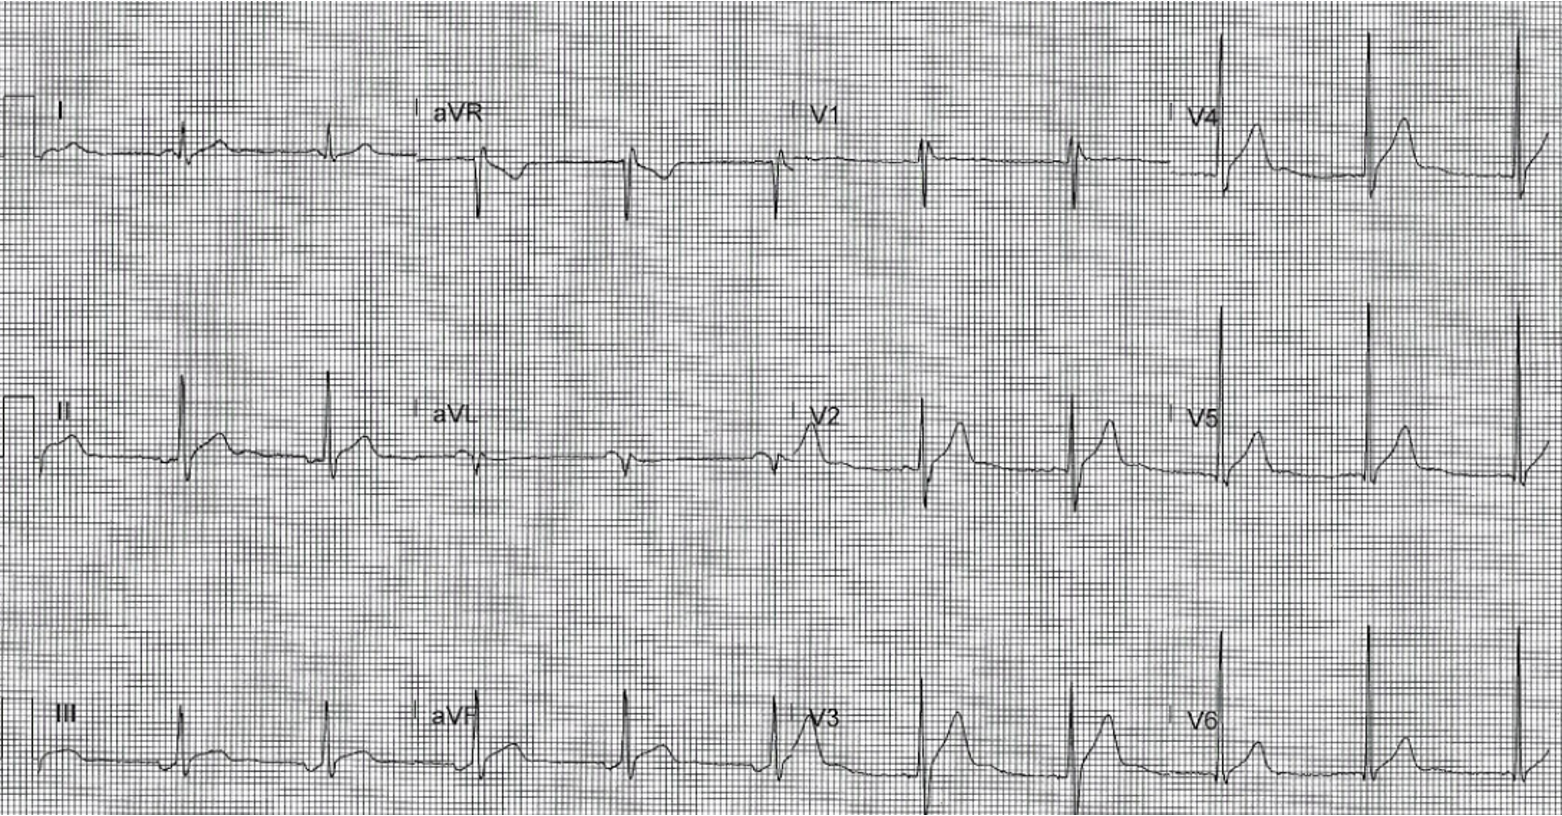 EKG of patient